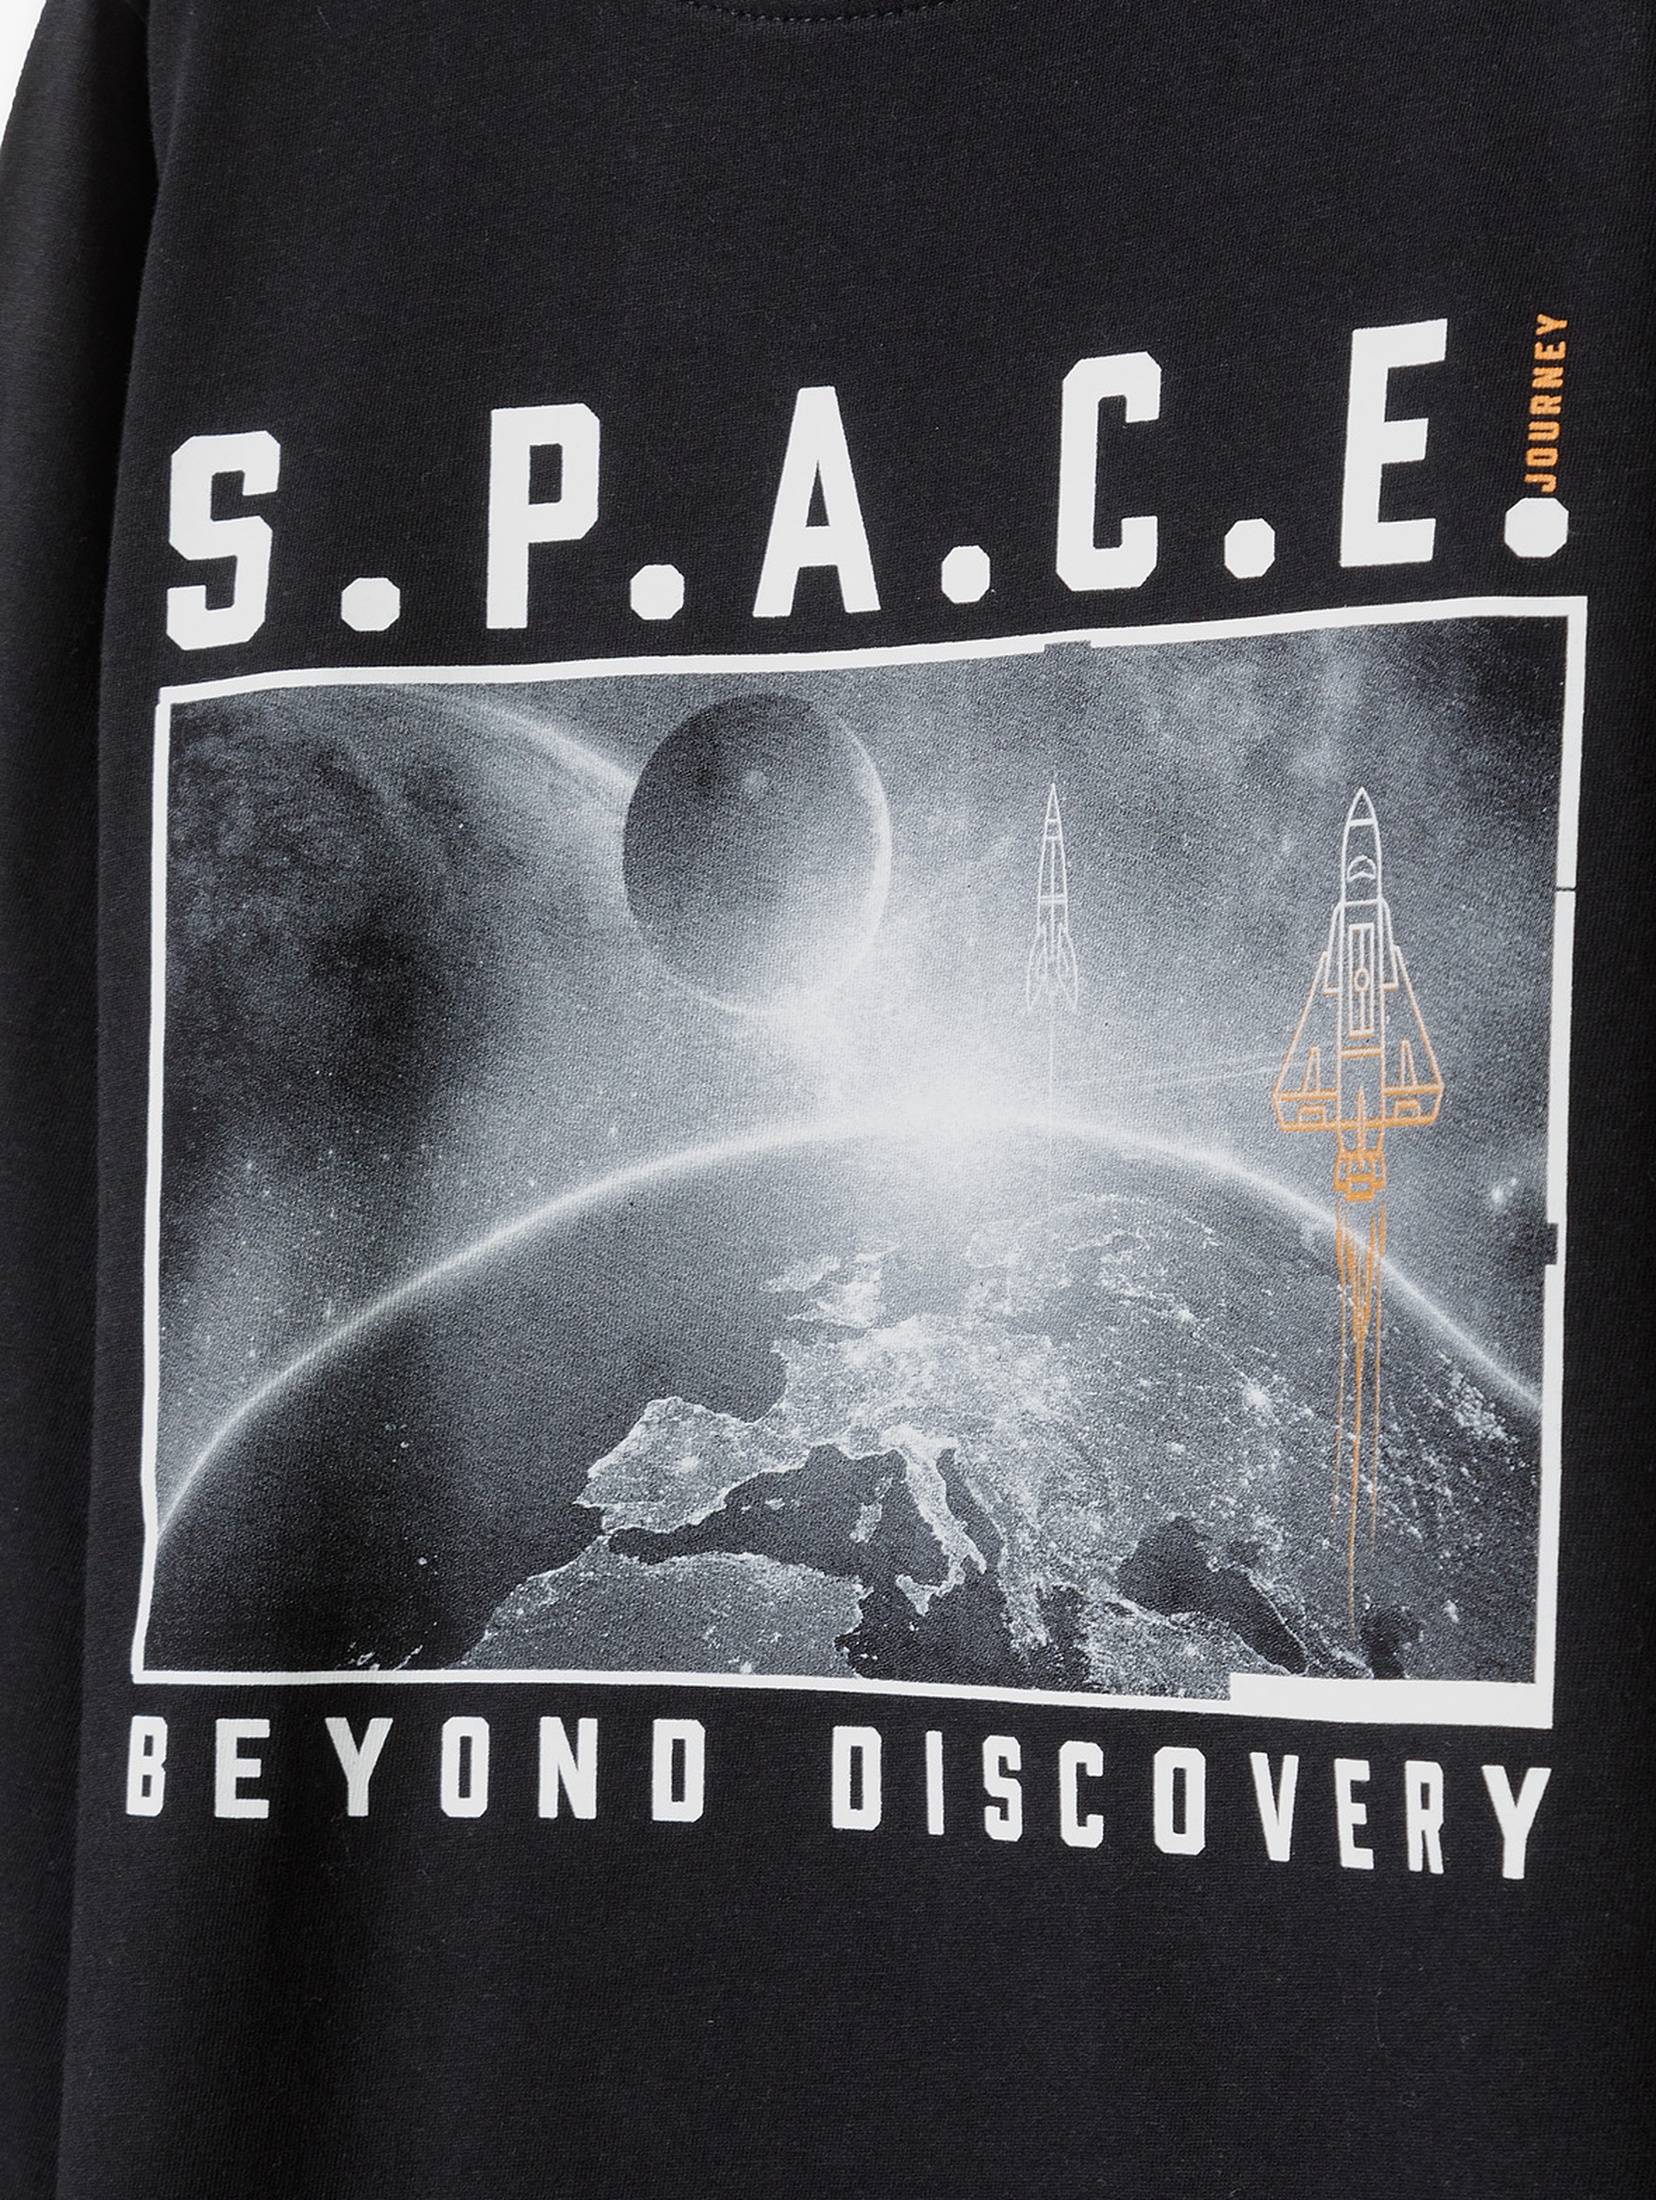 Bluzka chłopięca bawełniana czarna z nadrukiem S.P.A.C.E. Beyond Discovery